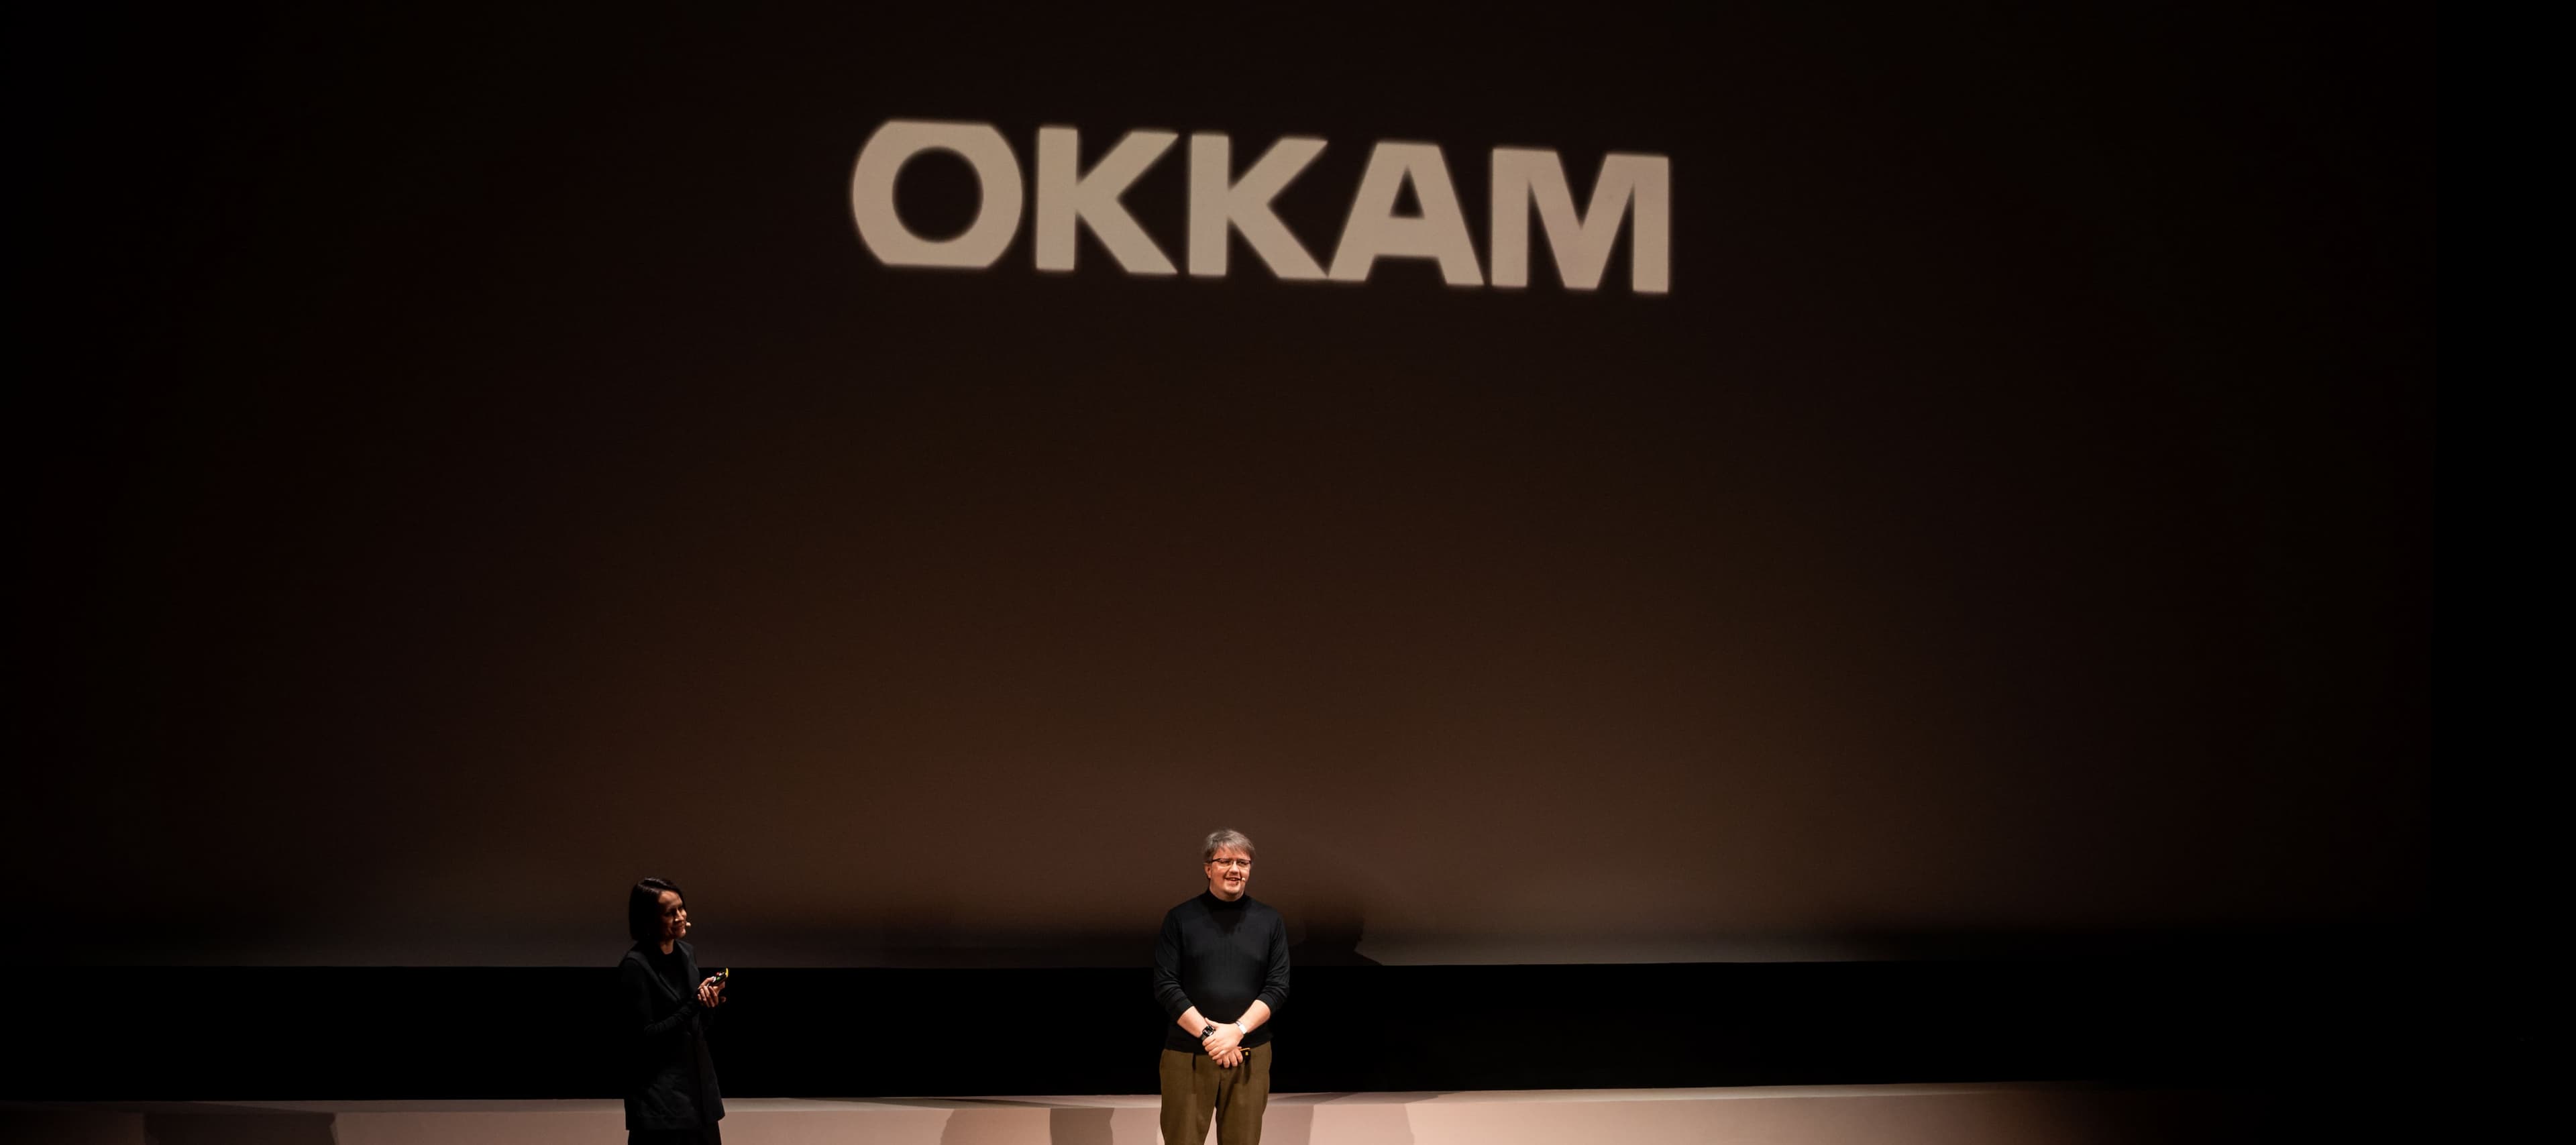 Фото новости: "Эксперты обсудят цену и пользу бизнес-инструментов на конференции Okkam"